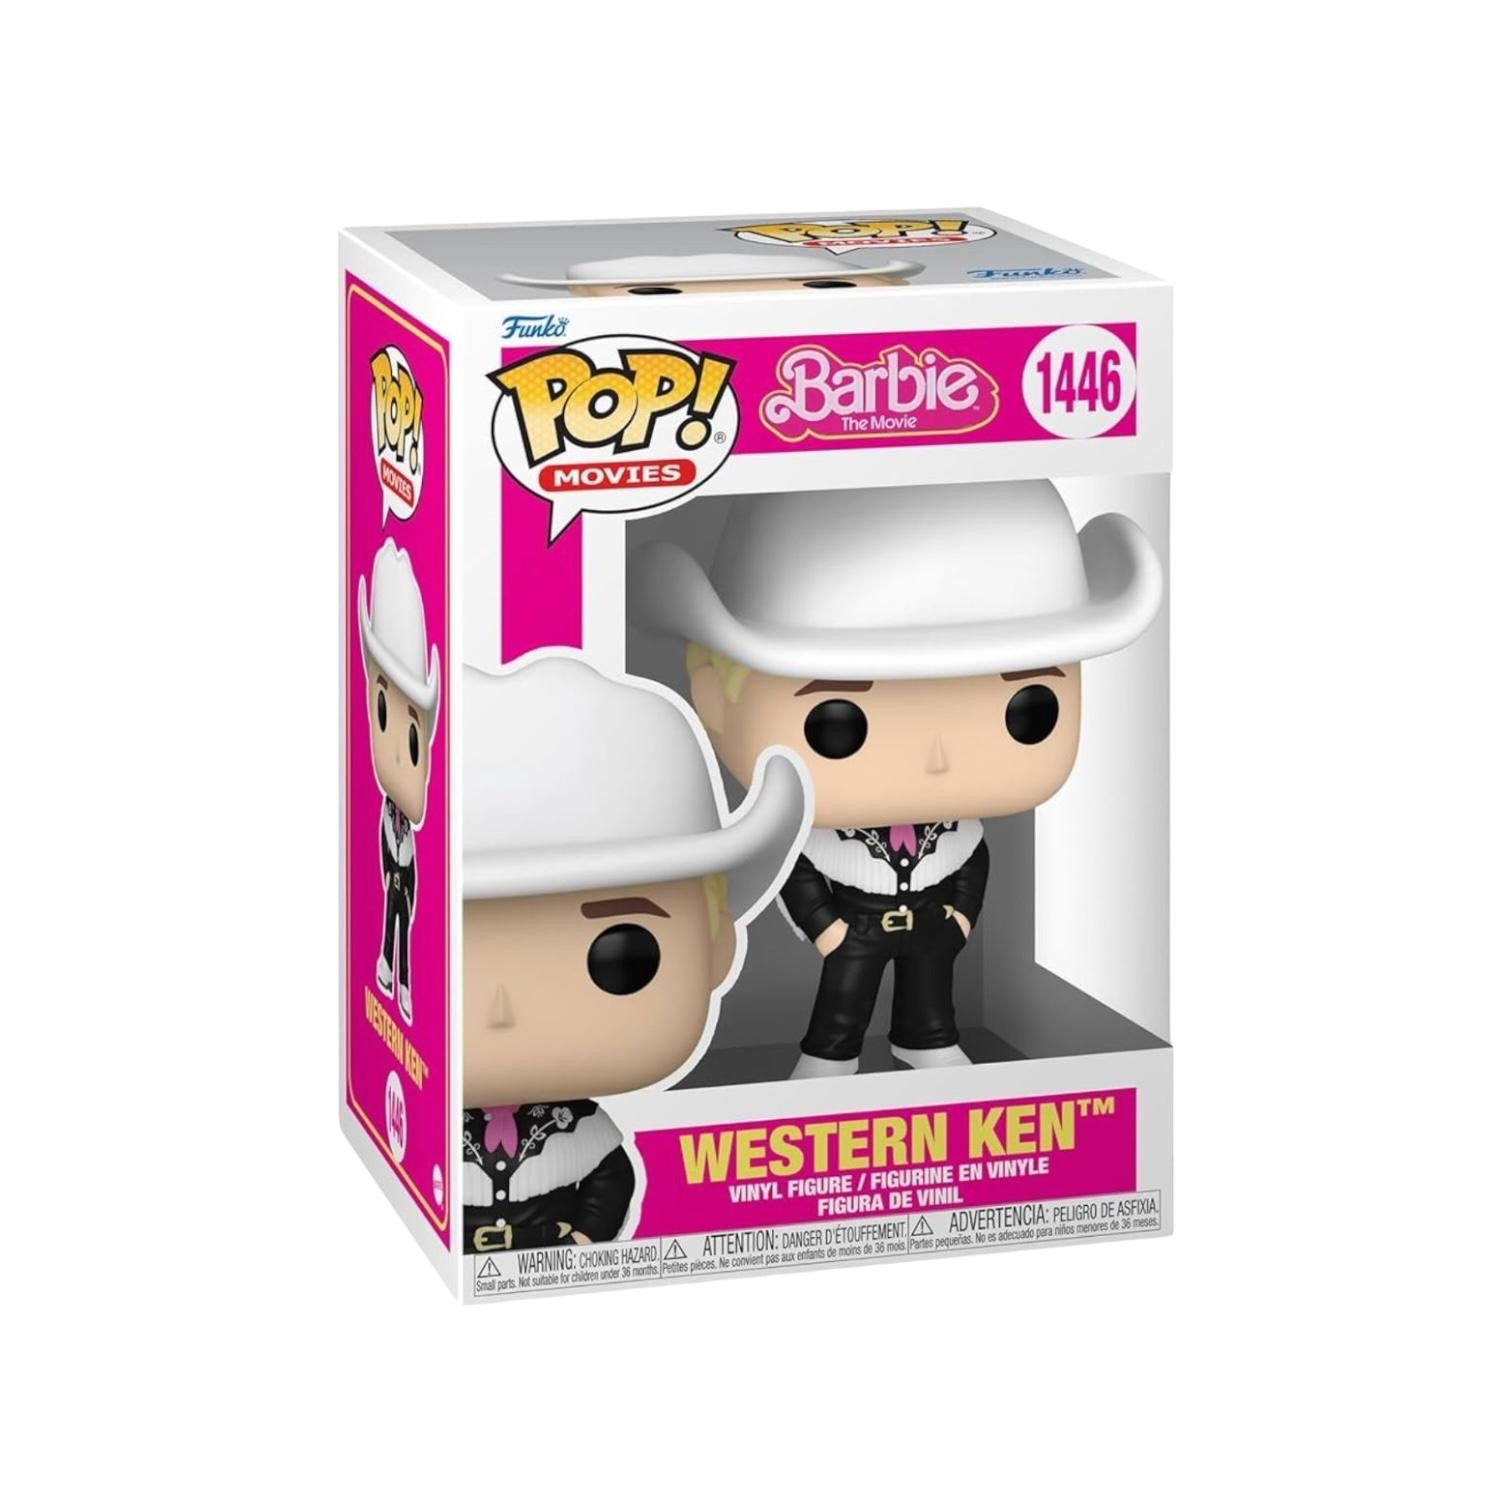 Western Ken #1446 Funko Pop! - Barbie The Movie